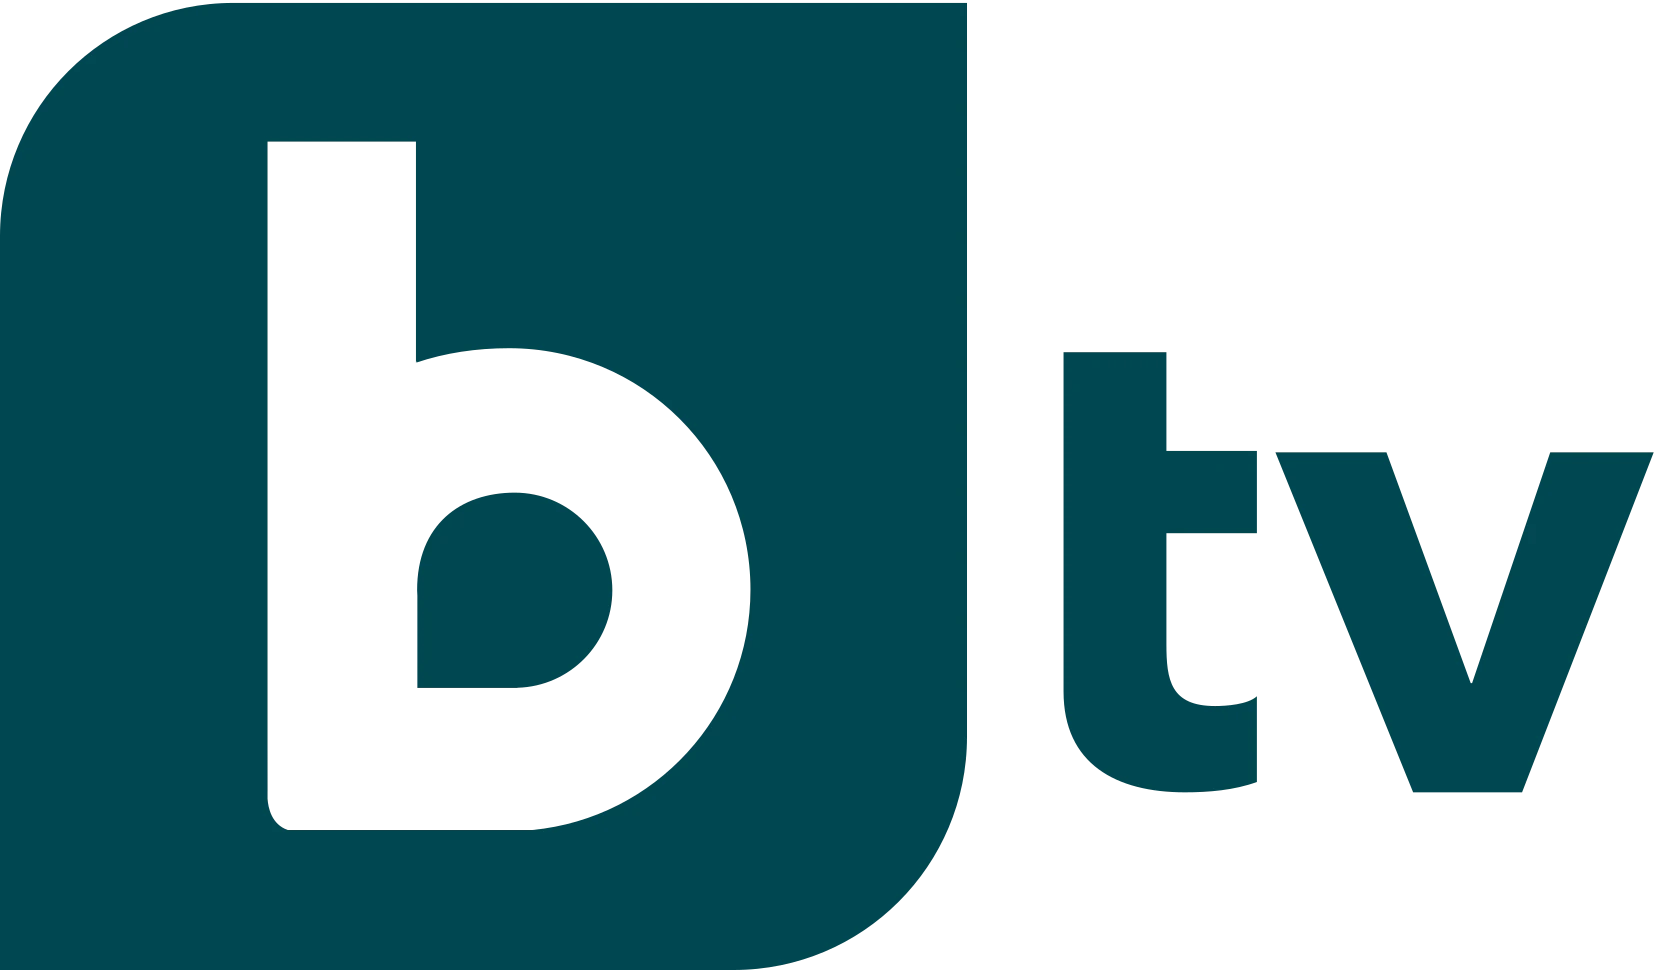 BTV Media Group